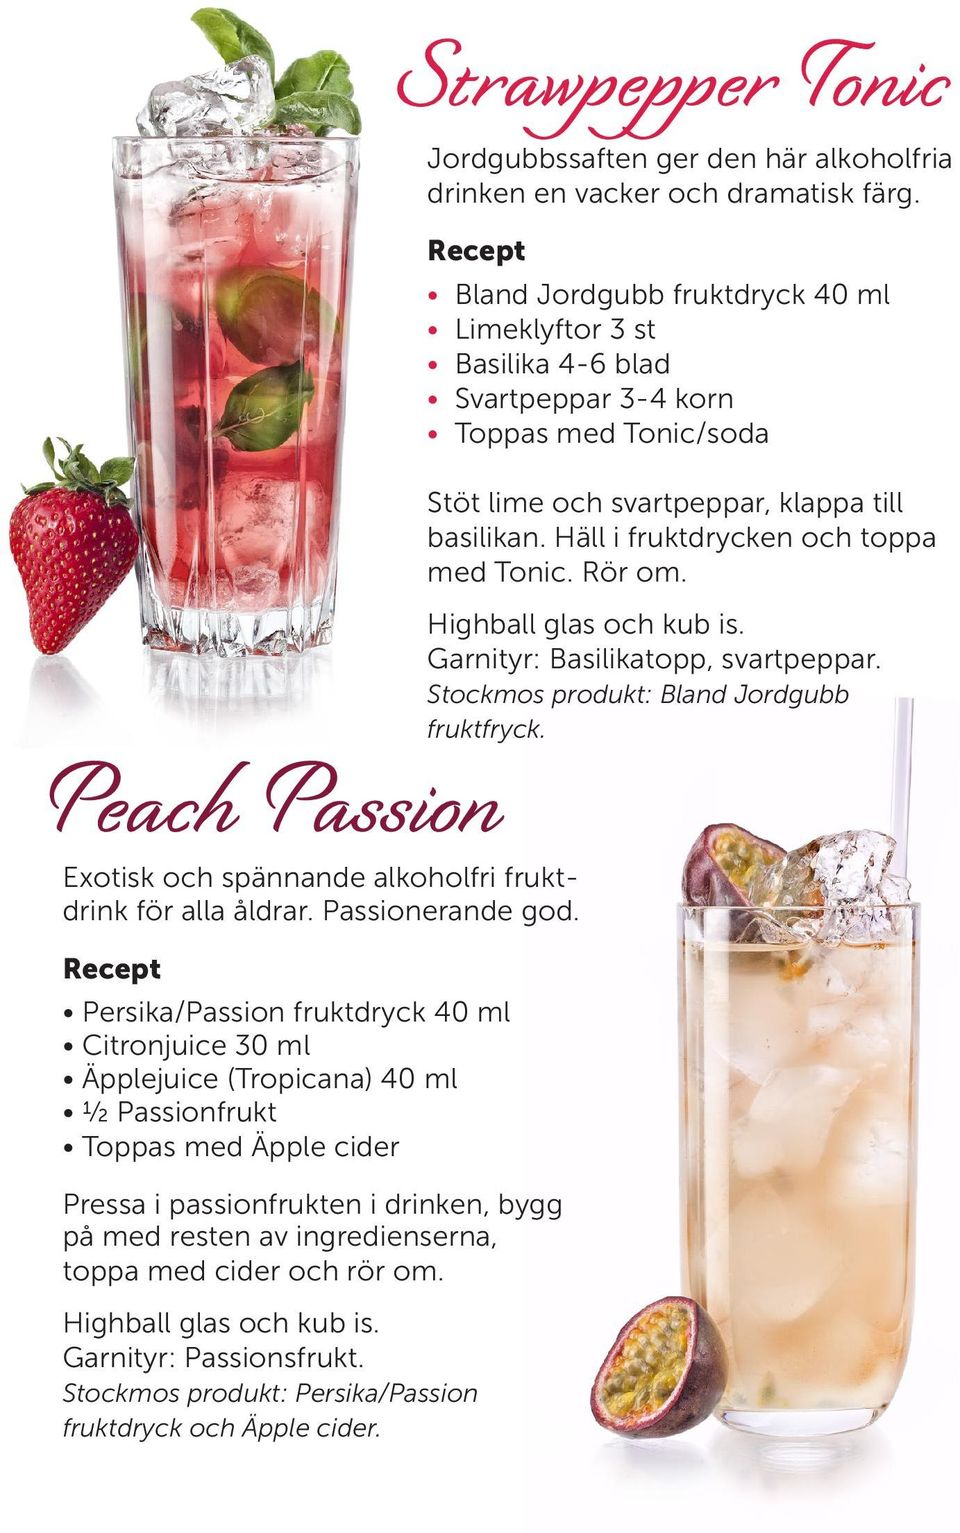 med cider och rör om. Garnityr: Passionsfrukt. Stockmos produkt: Persika/Passion fruktdryck och Äpple cider.